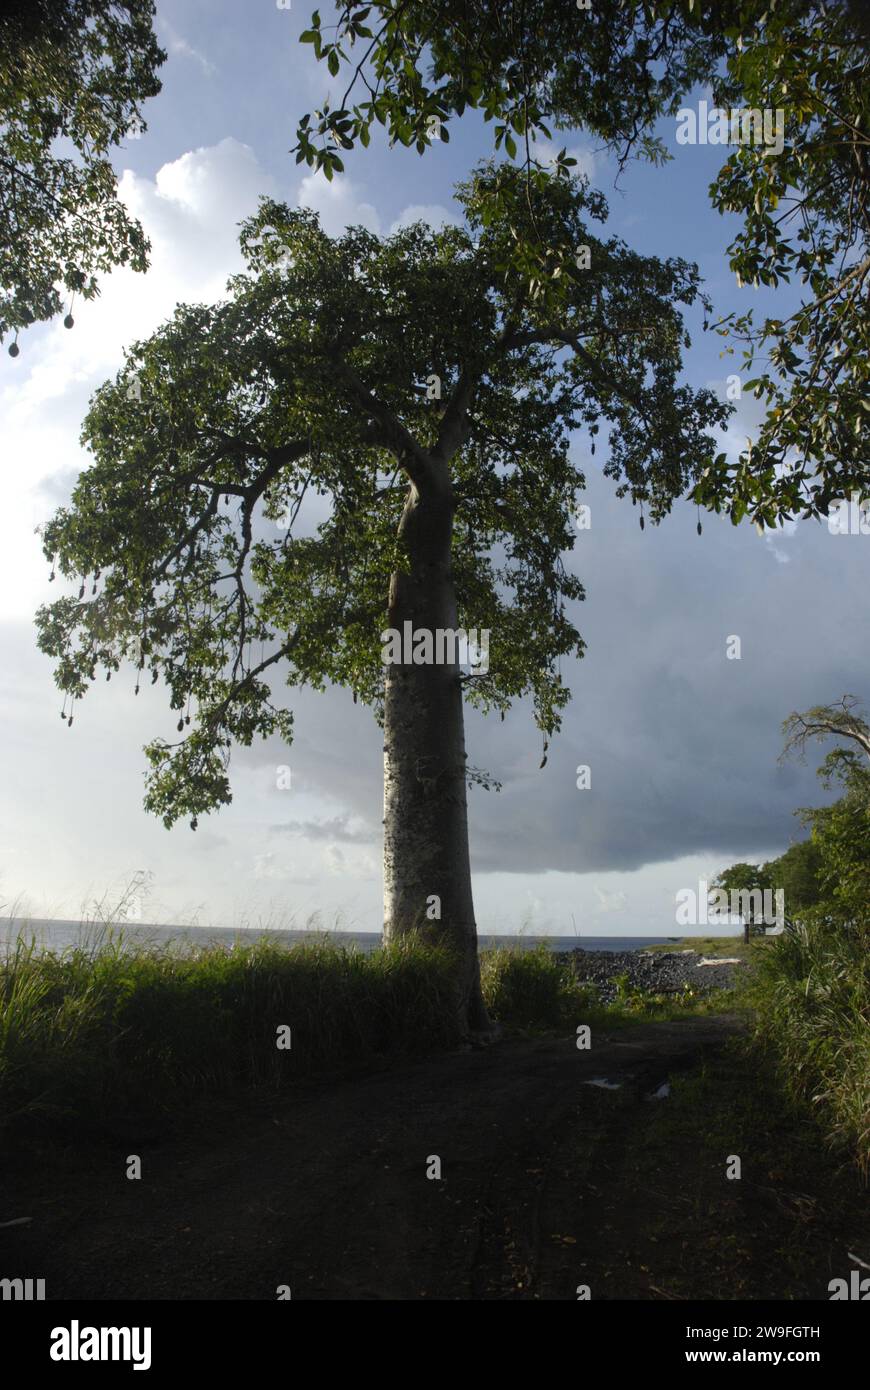 Baobab-Baum am Strand von Micondó - Baobab sind langlebige Laubbäume mit breiten Stämmen und kompakten Kronen - sie gehören zu den langlebigsten Gefäßpflanzen. Adansonia ist eine Gattung, die aus acht Arten besteht. Sao Tome und Principe, Afrika. Stockfoto